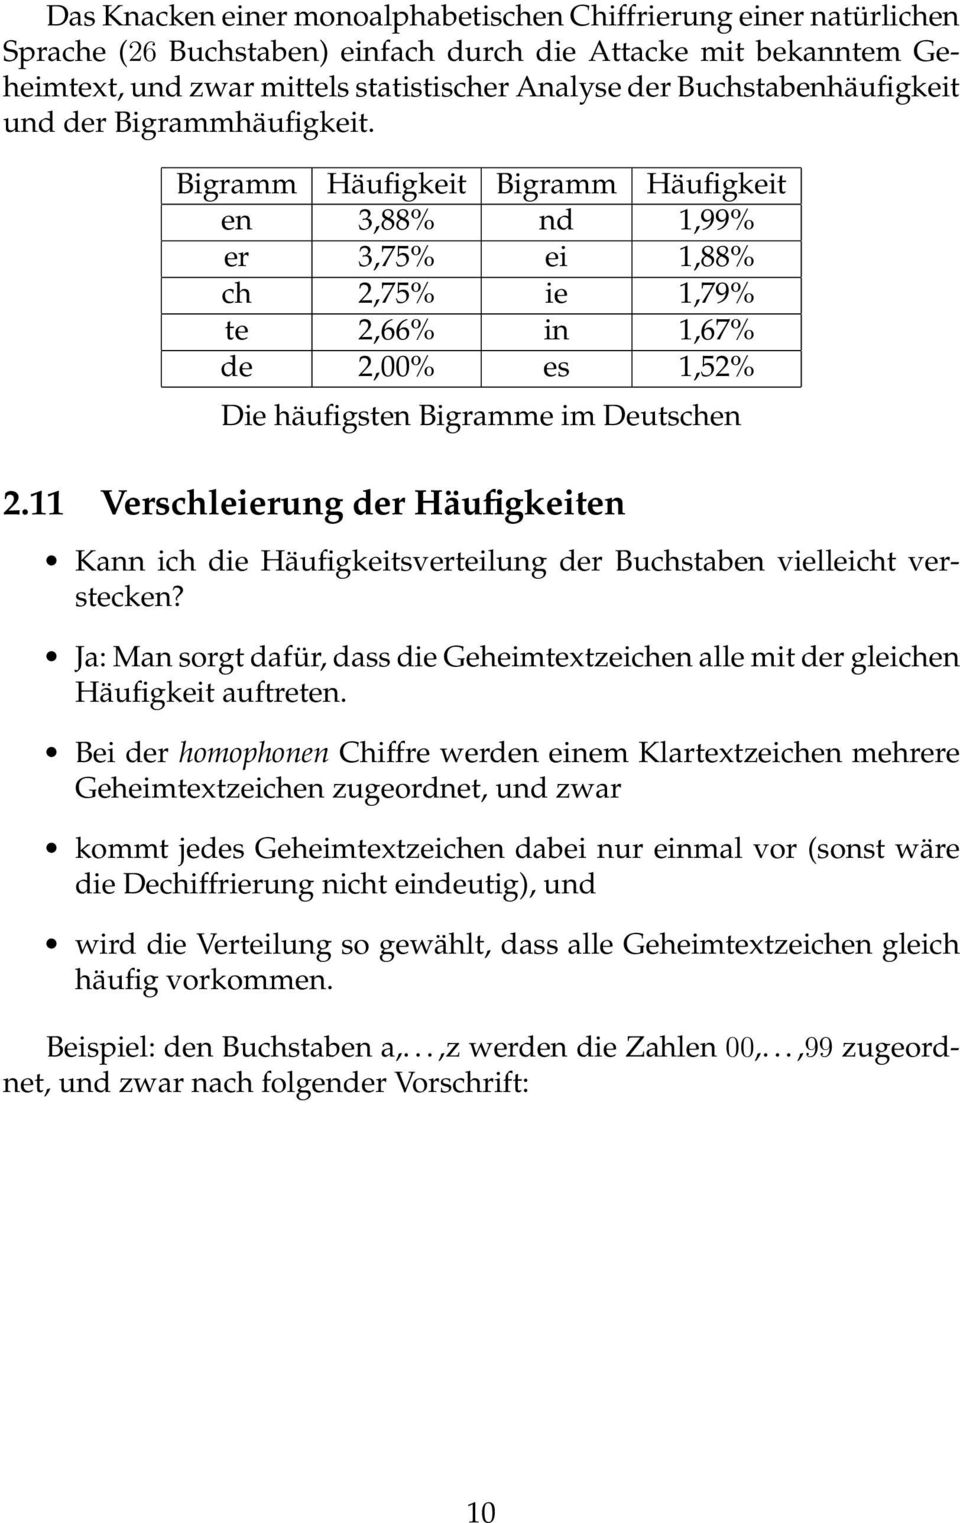 Bigramm Häufigkeit Bigramm Häufigkeit en 3,88% nd 1,99% er 3,75% ei 1,88% ch 2,75% ie 1,79% te 2,66% in 1,67% de 2,00% es 1,52% Die häufigsten Bigramme im Deutschen 2.